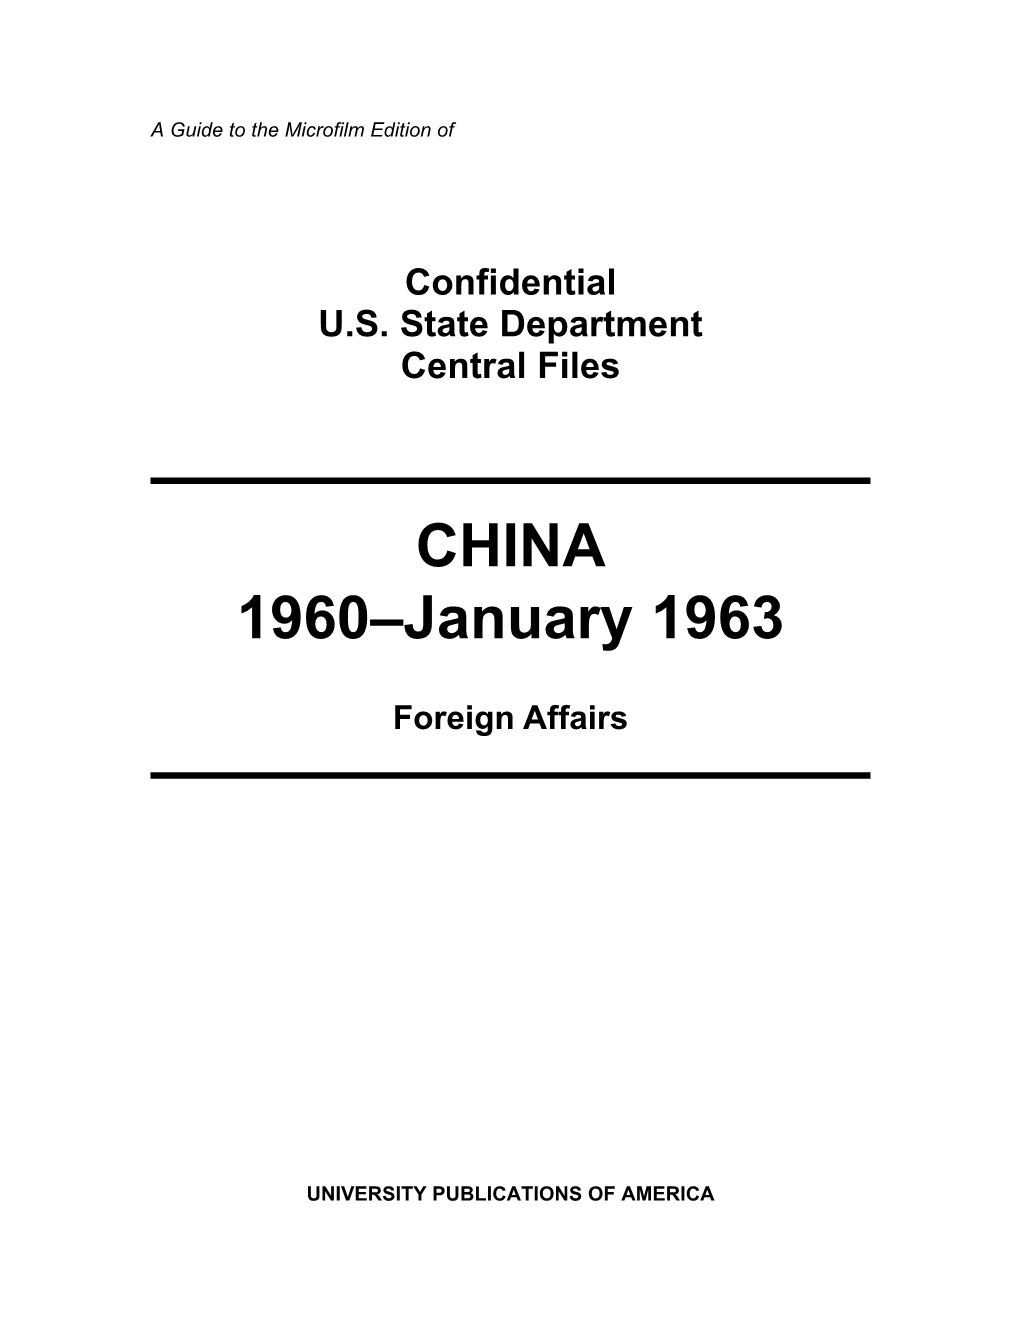 CHINA 1960–January 1963